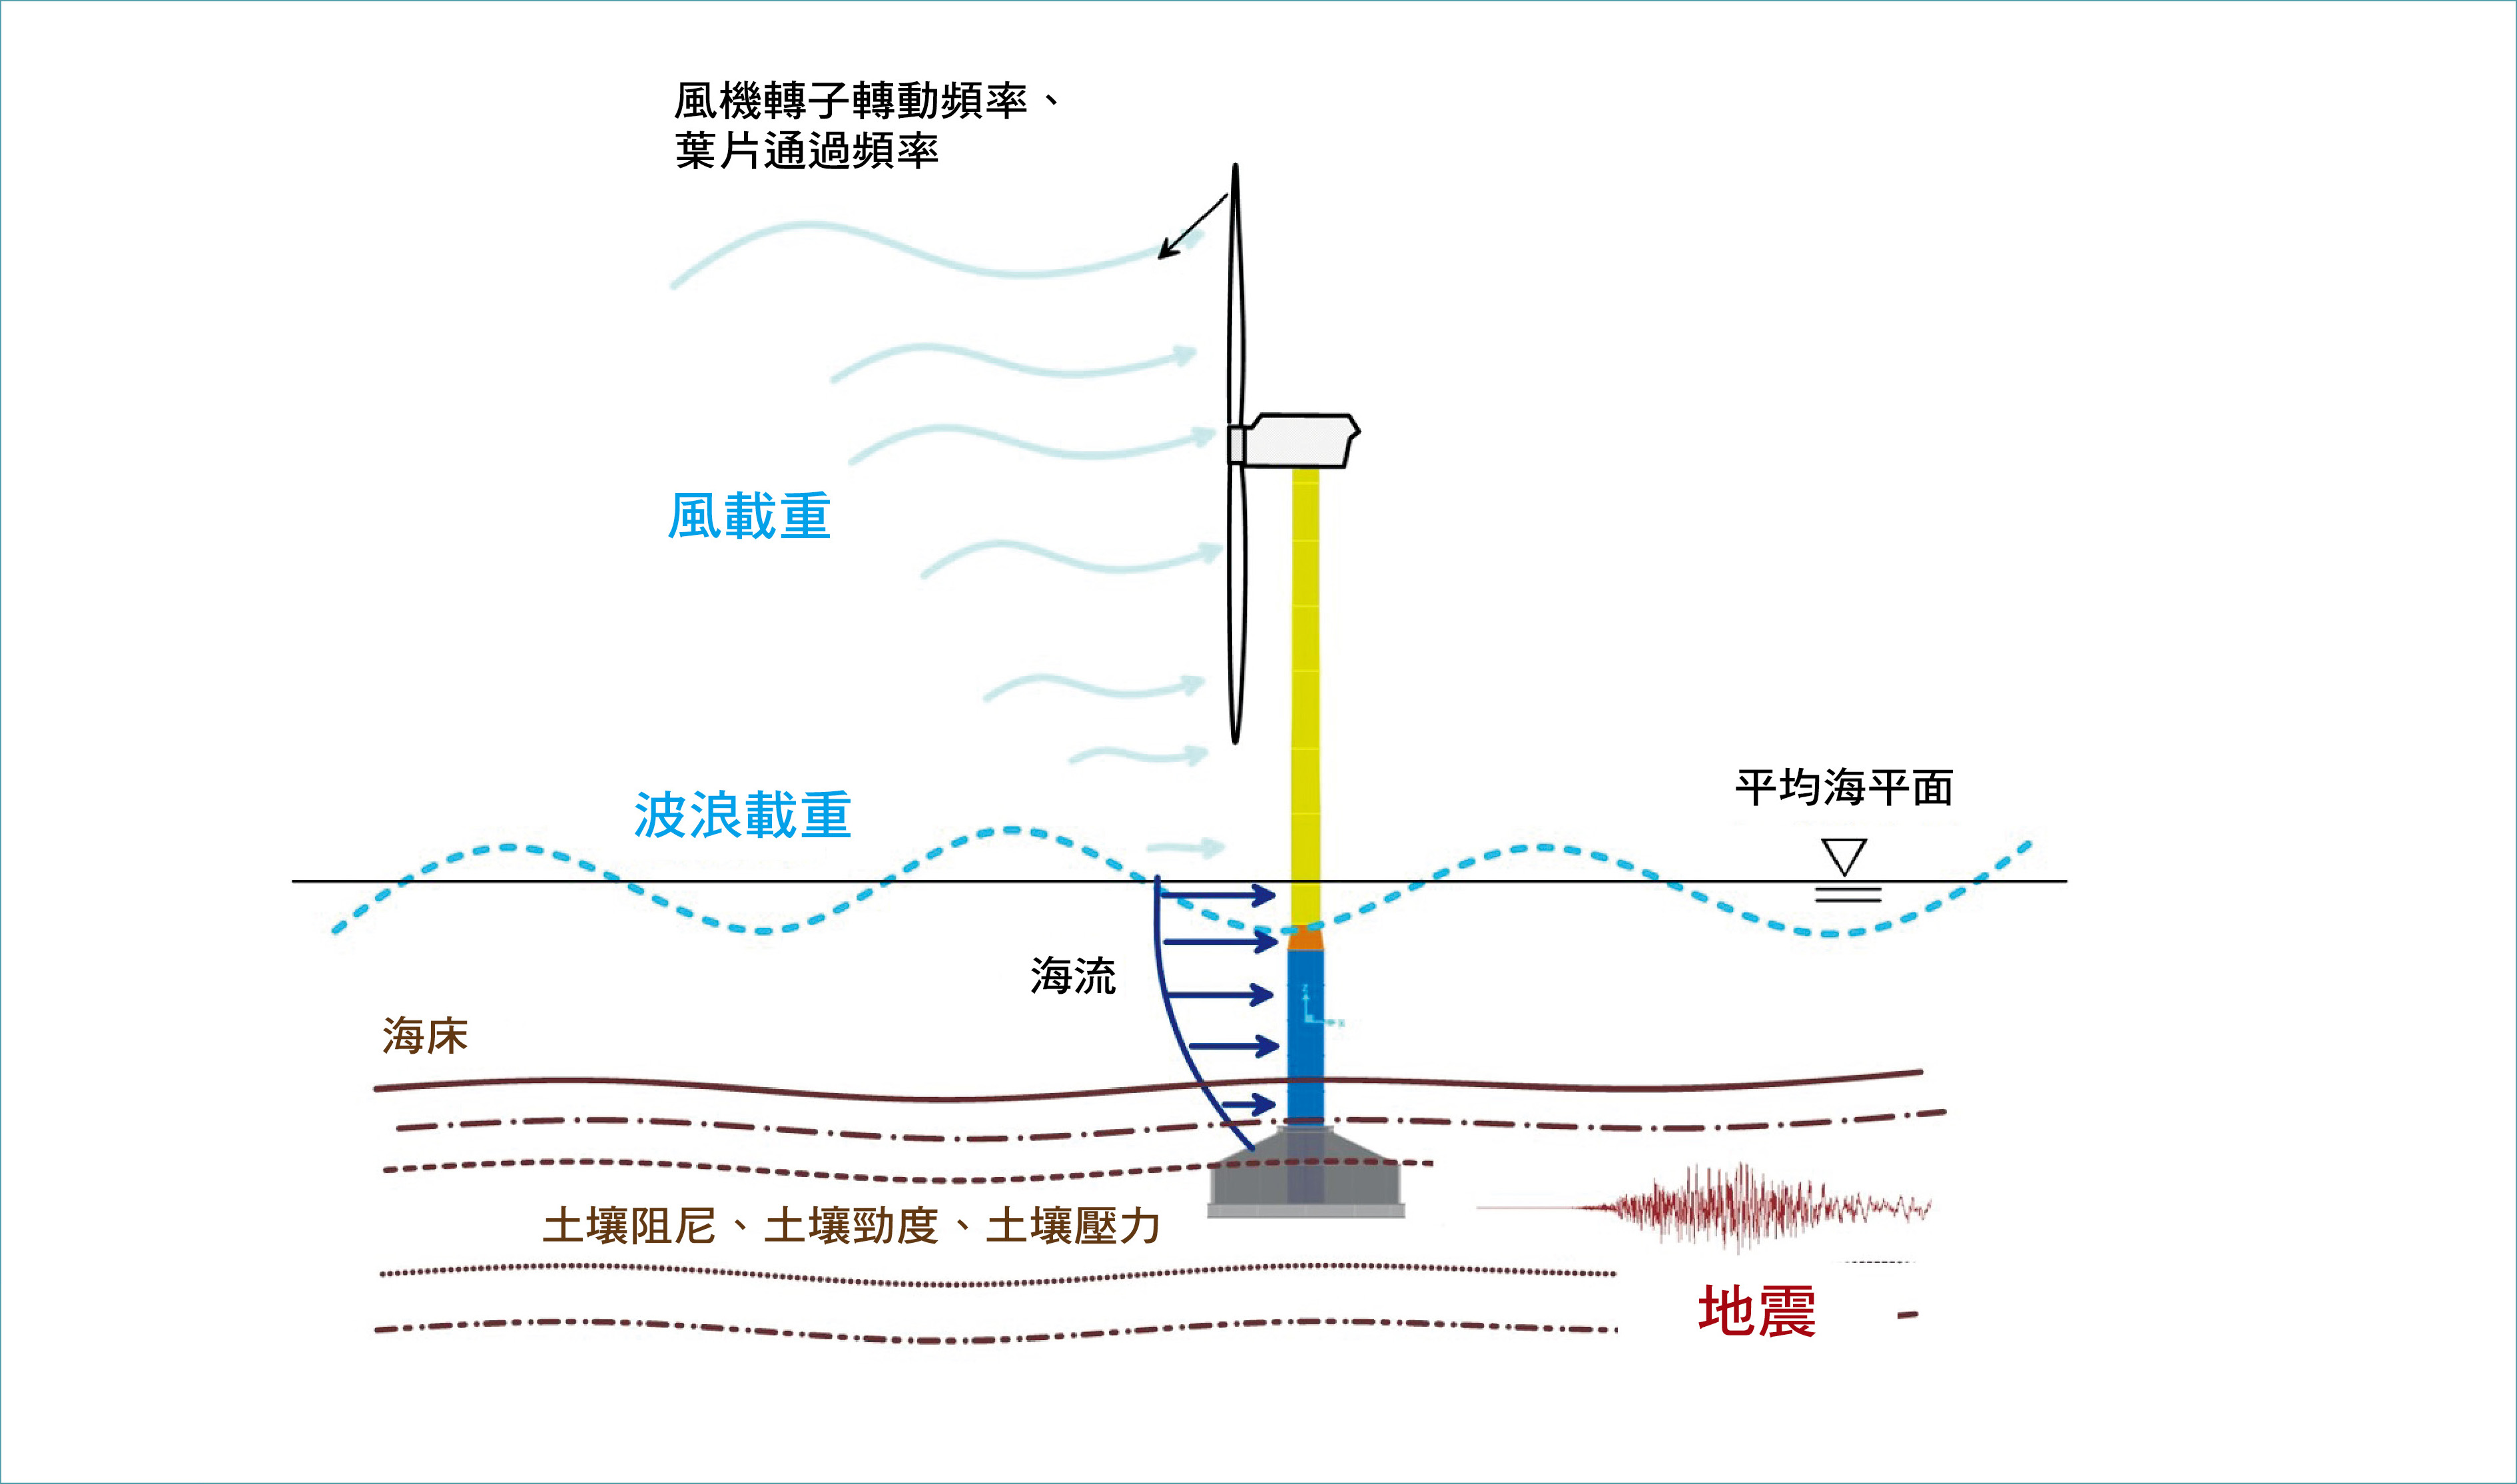 離岸風機及複合重力式基礎受到的外力載重（風、波浪、海流、地震、颱風等）。